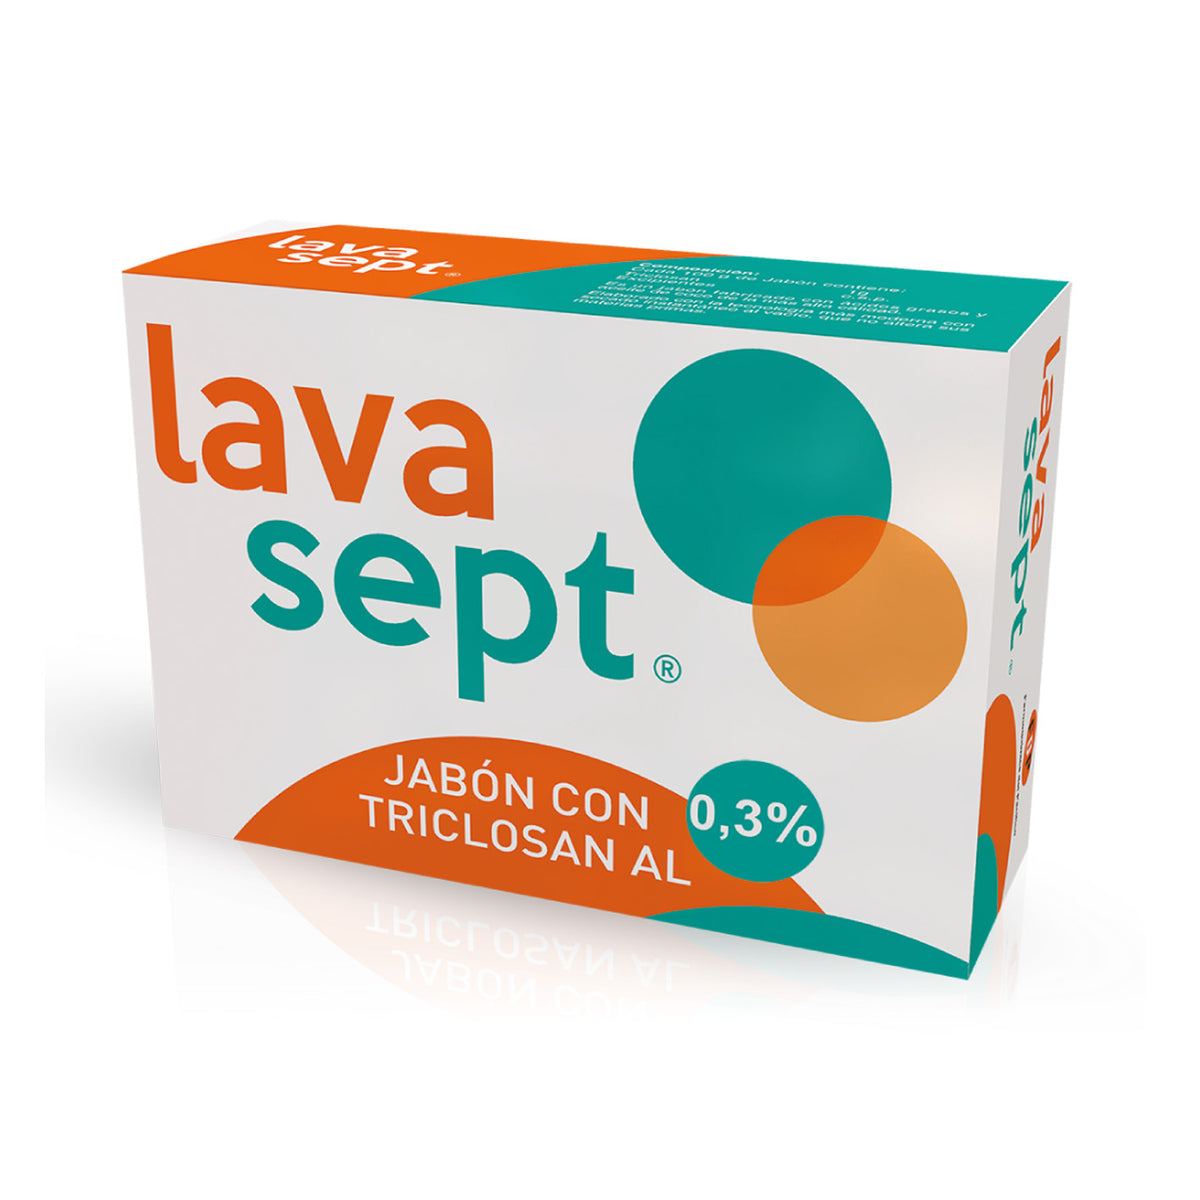 Lava Sept Jabón Barra 0,3%